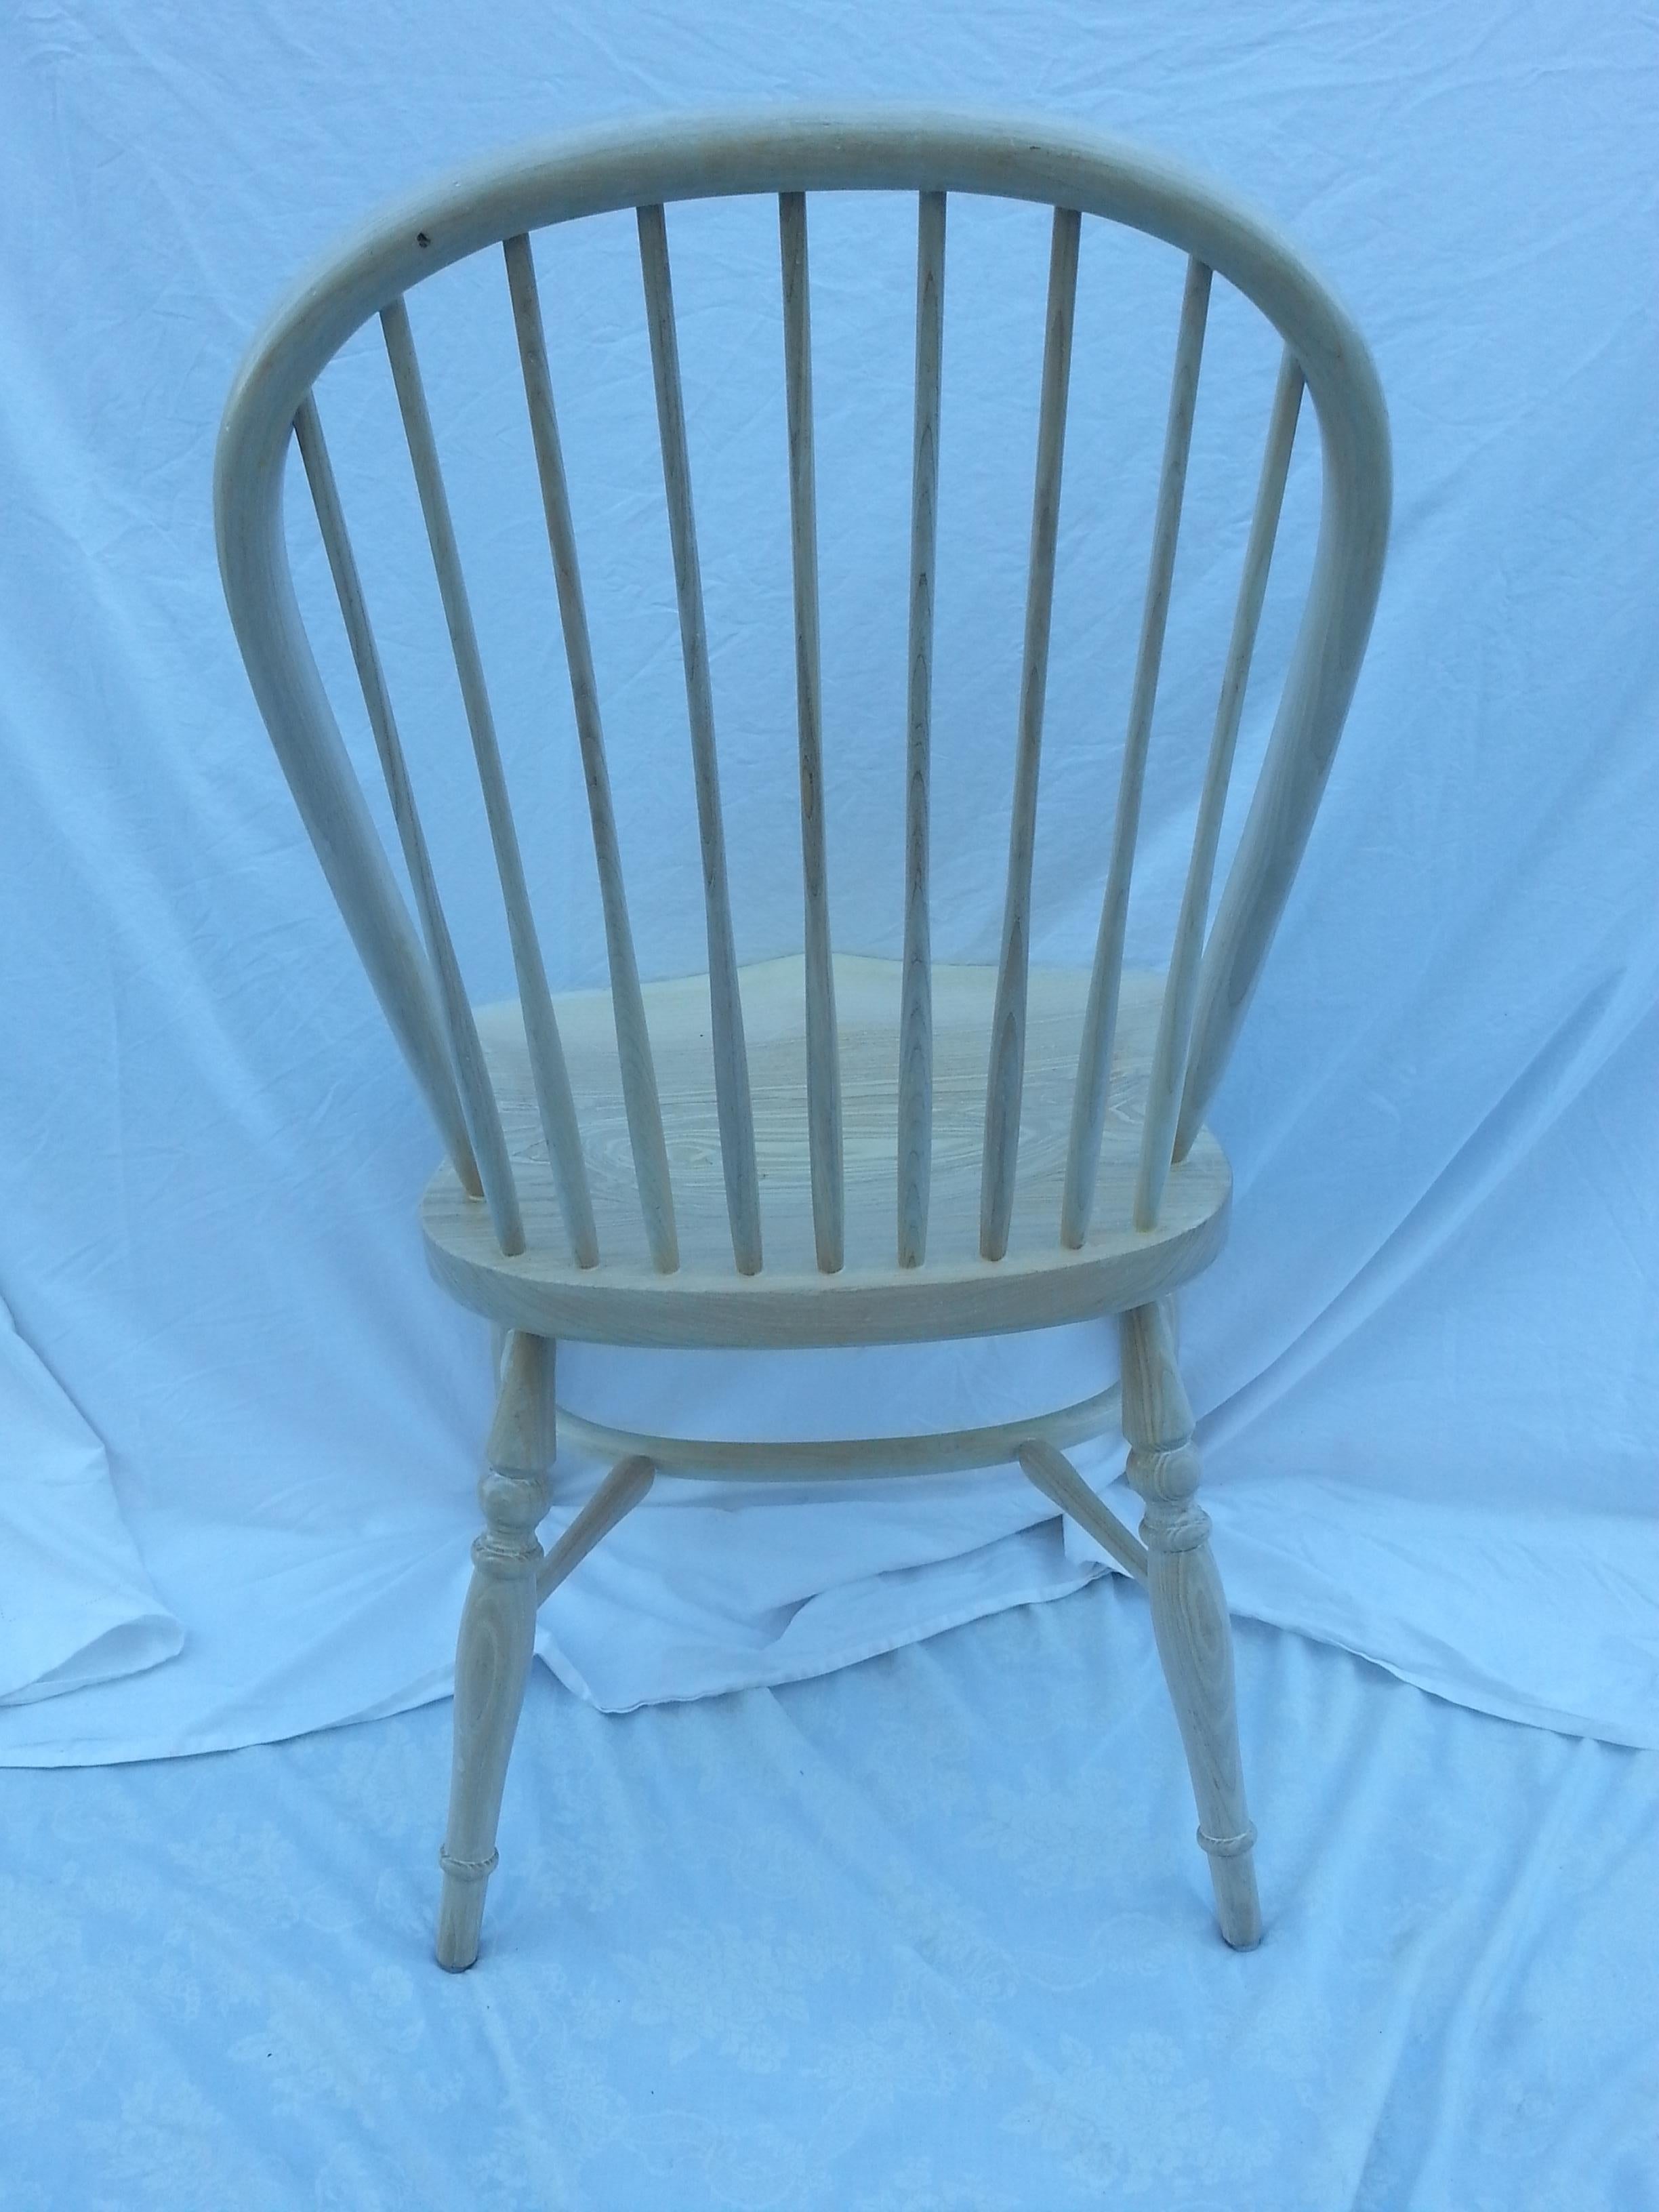 whitewash chairs